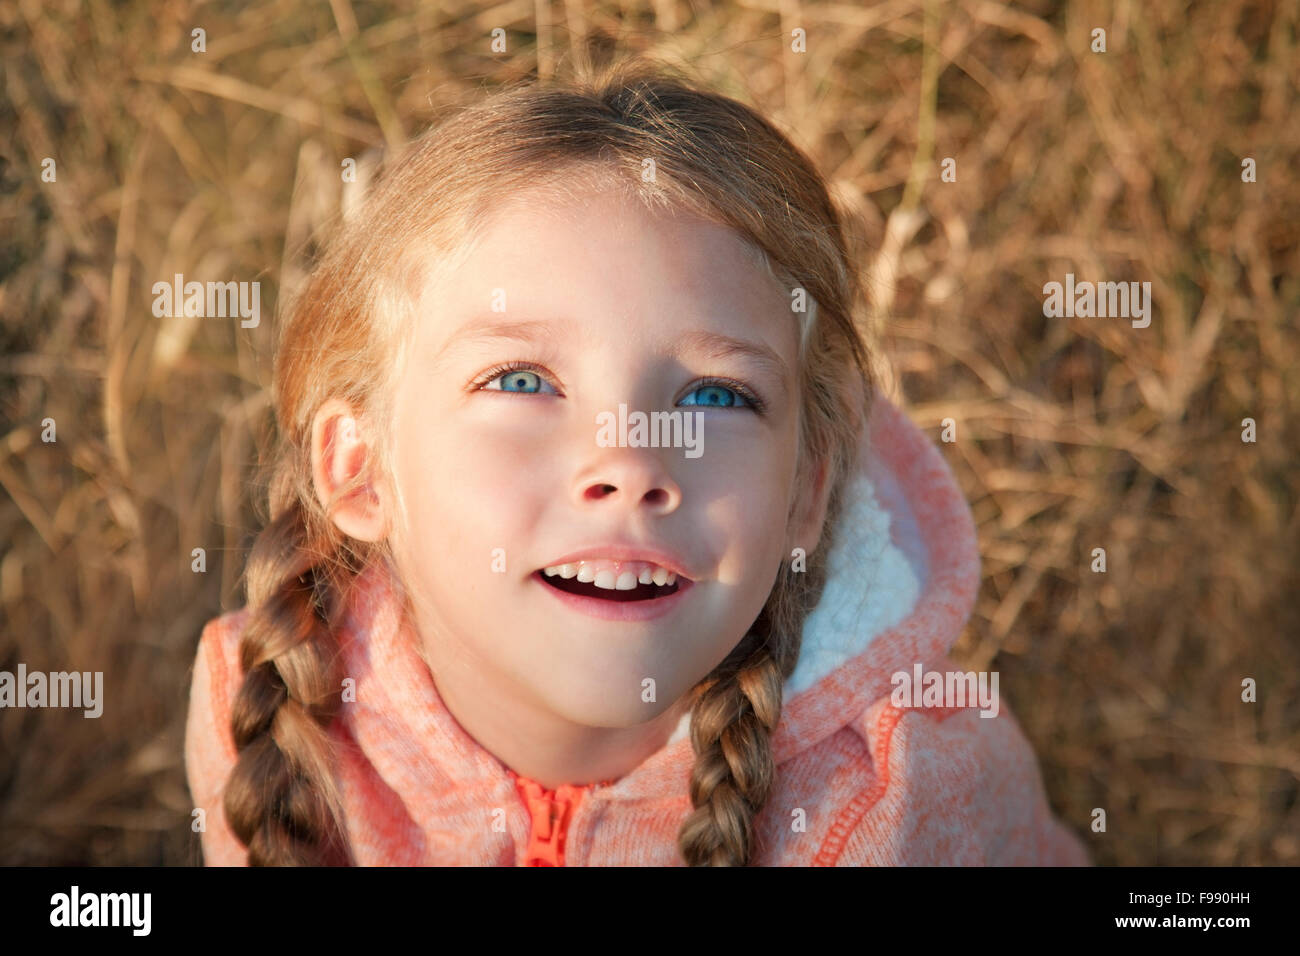 Porträt von einem kleinen Mädchen mit blauen Augen und Zöpfen Stockfoto